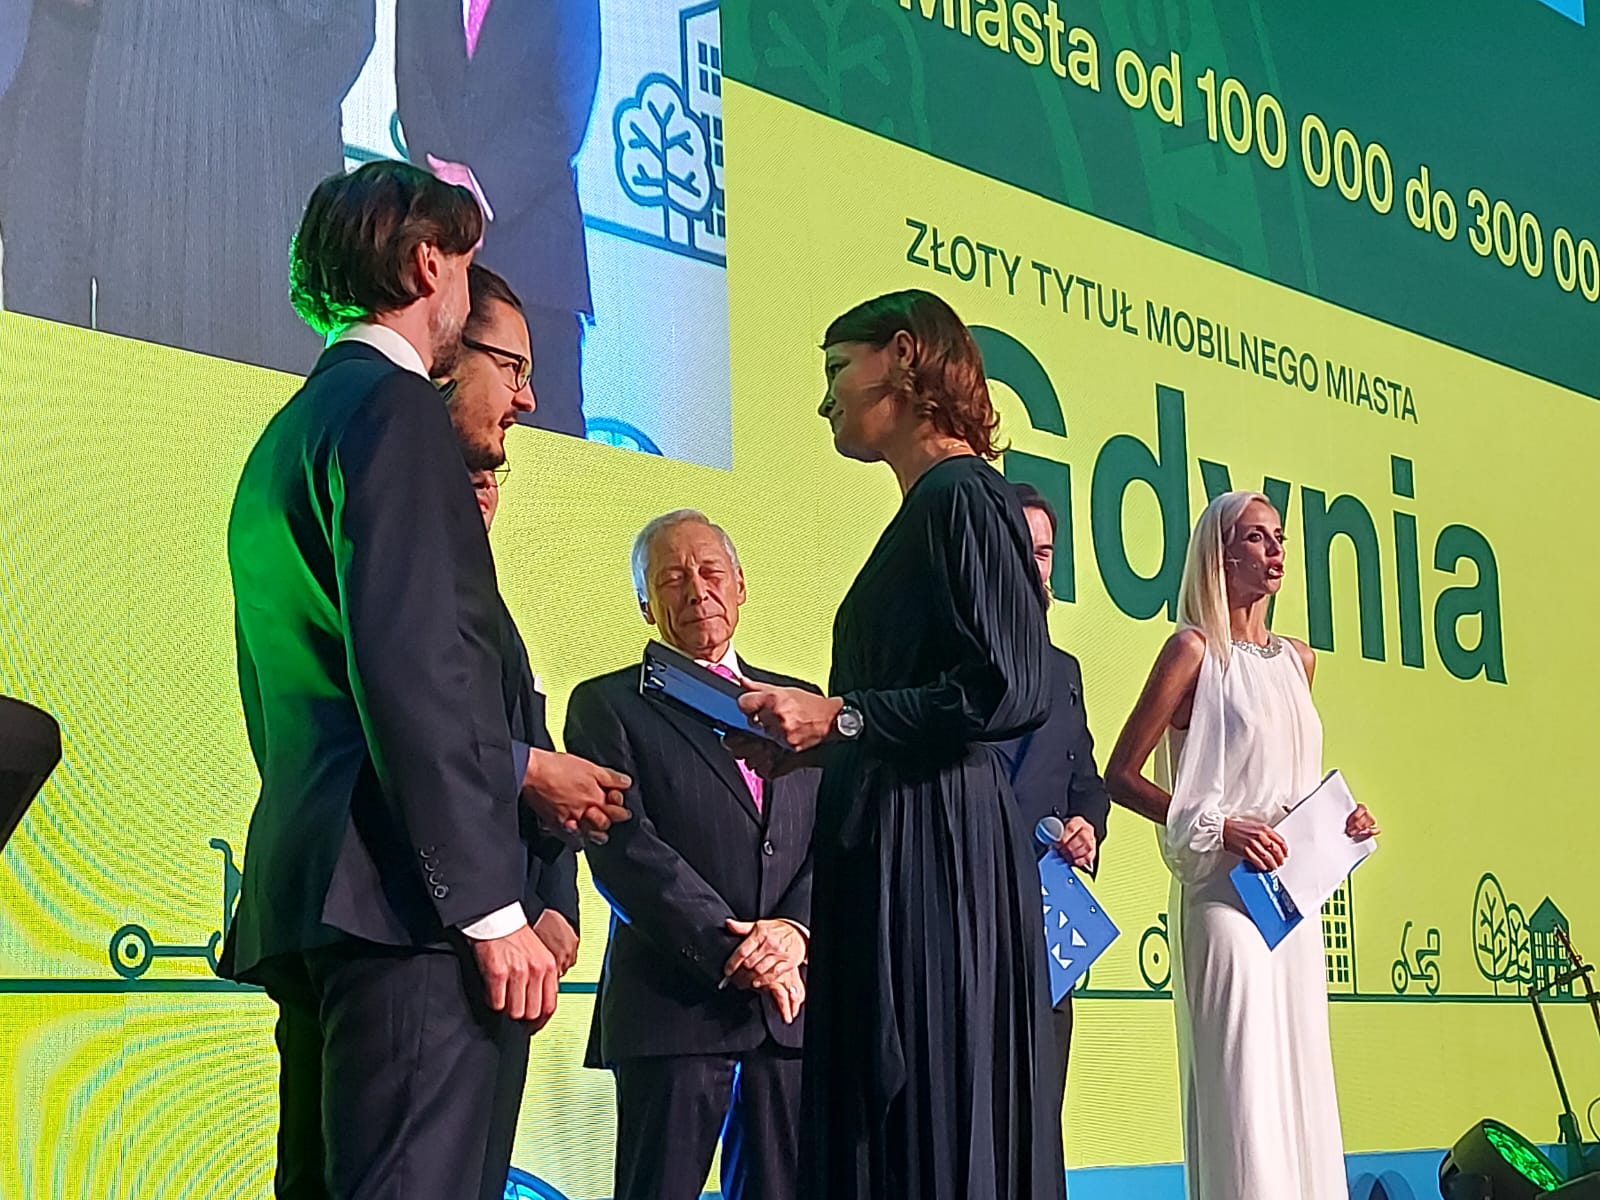 Scena Kongresu Nowej Mobilności, żółte tło z napisem "Gdynia", Katarzyna Gruszecka-Spychała odbiera nagrodę, na scenie kilka osób